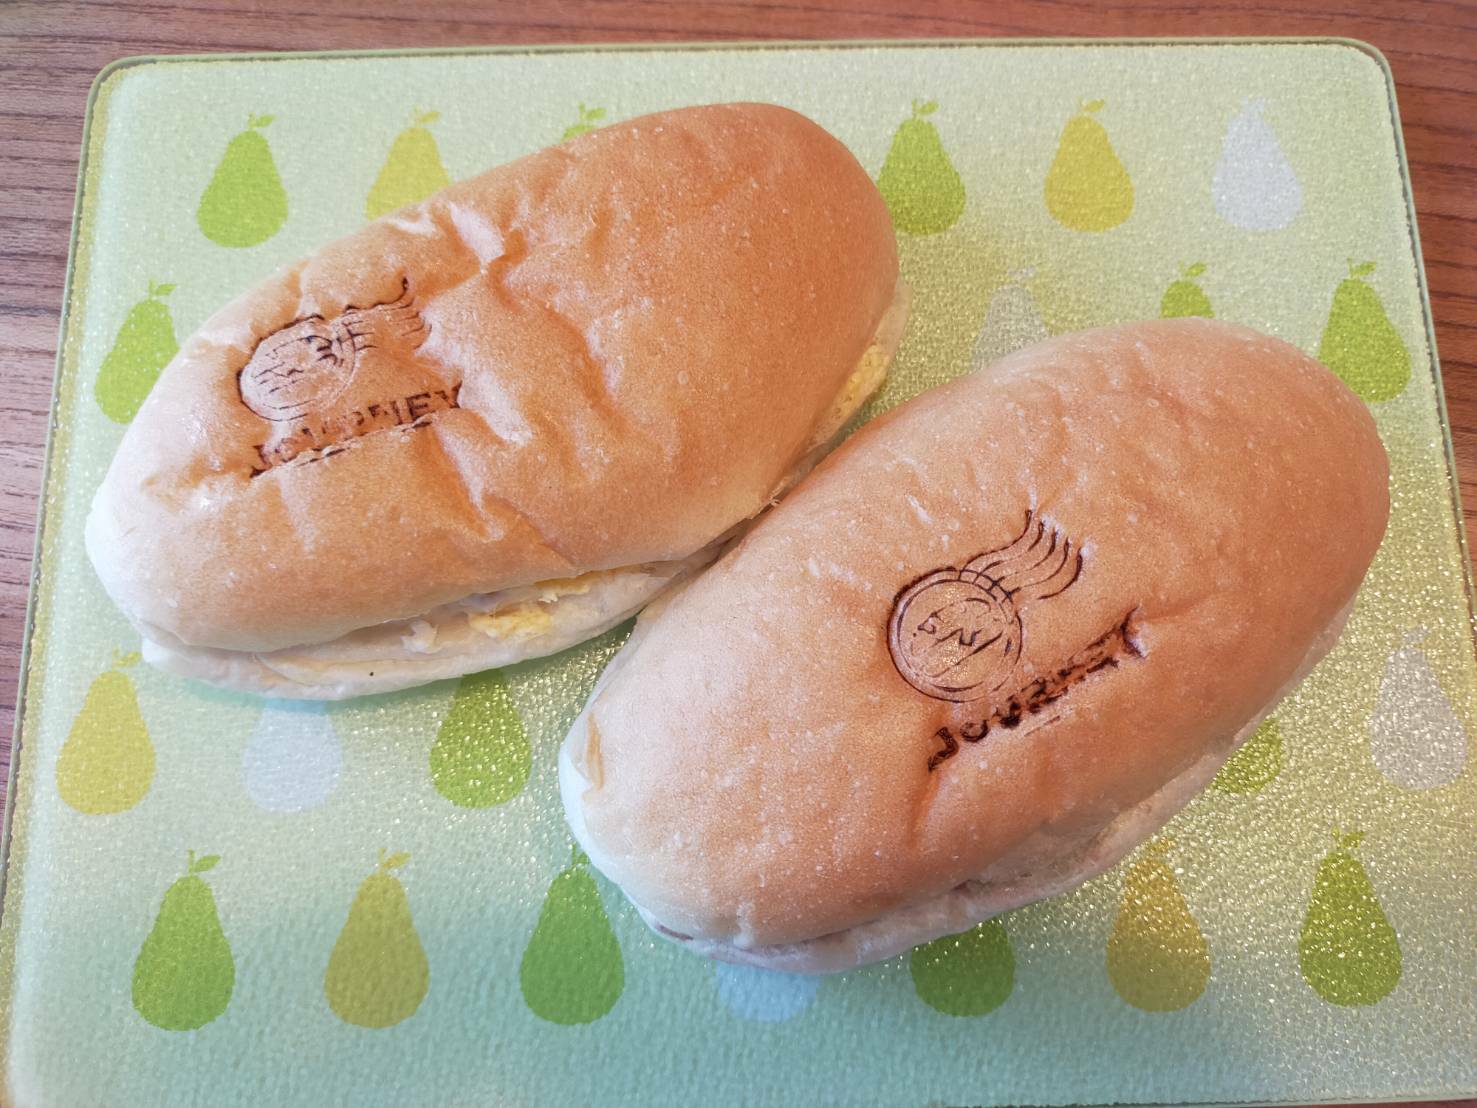 パンには「JOURNEY」の焼印が。カワイイ！